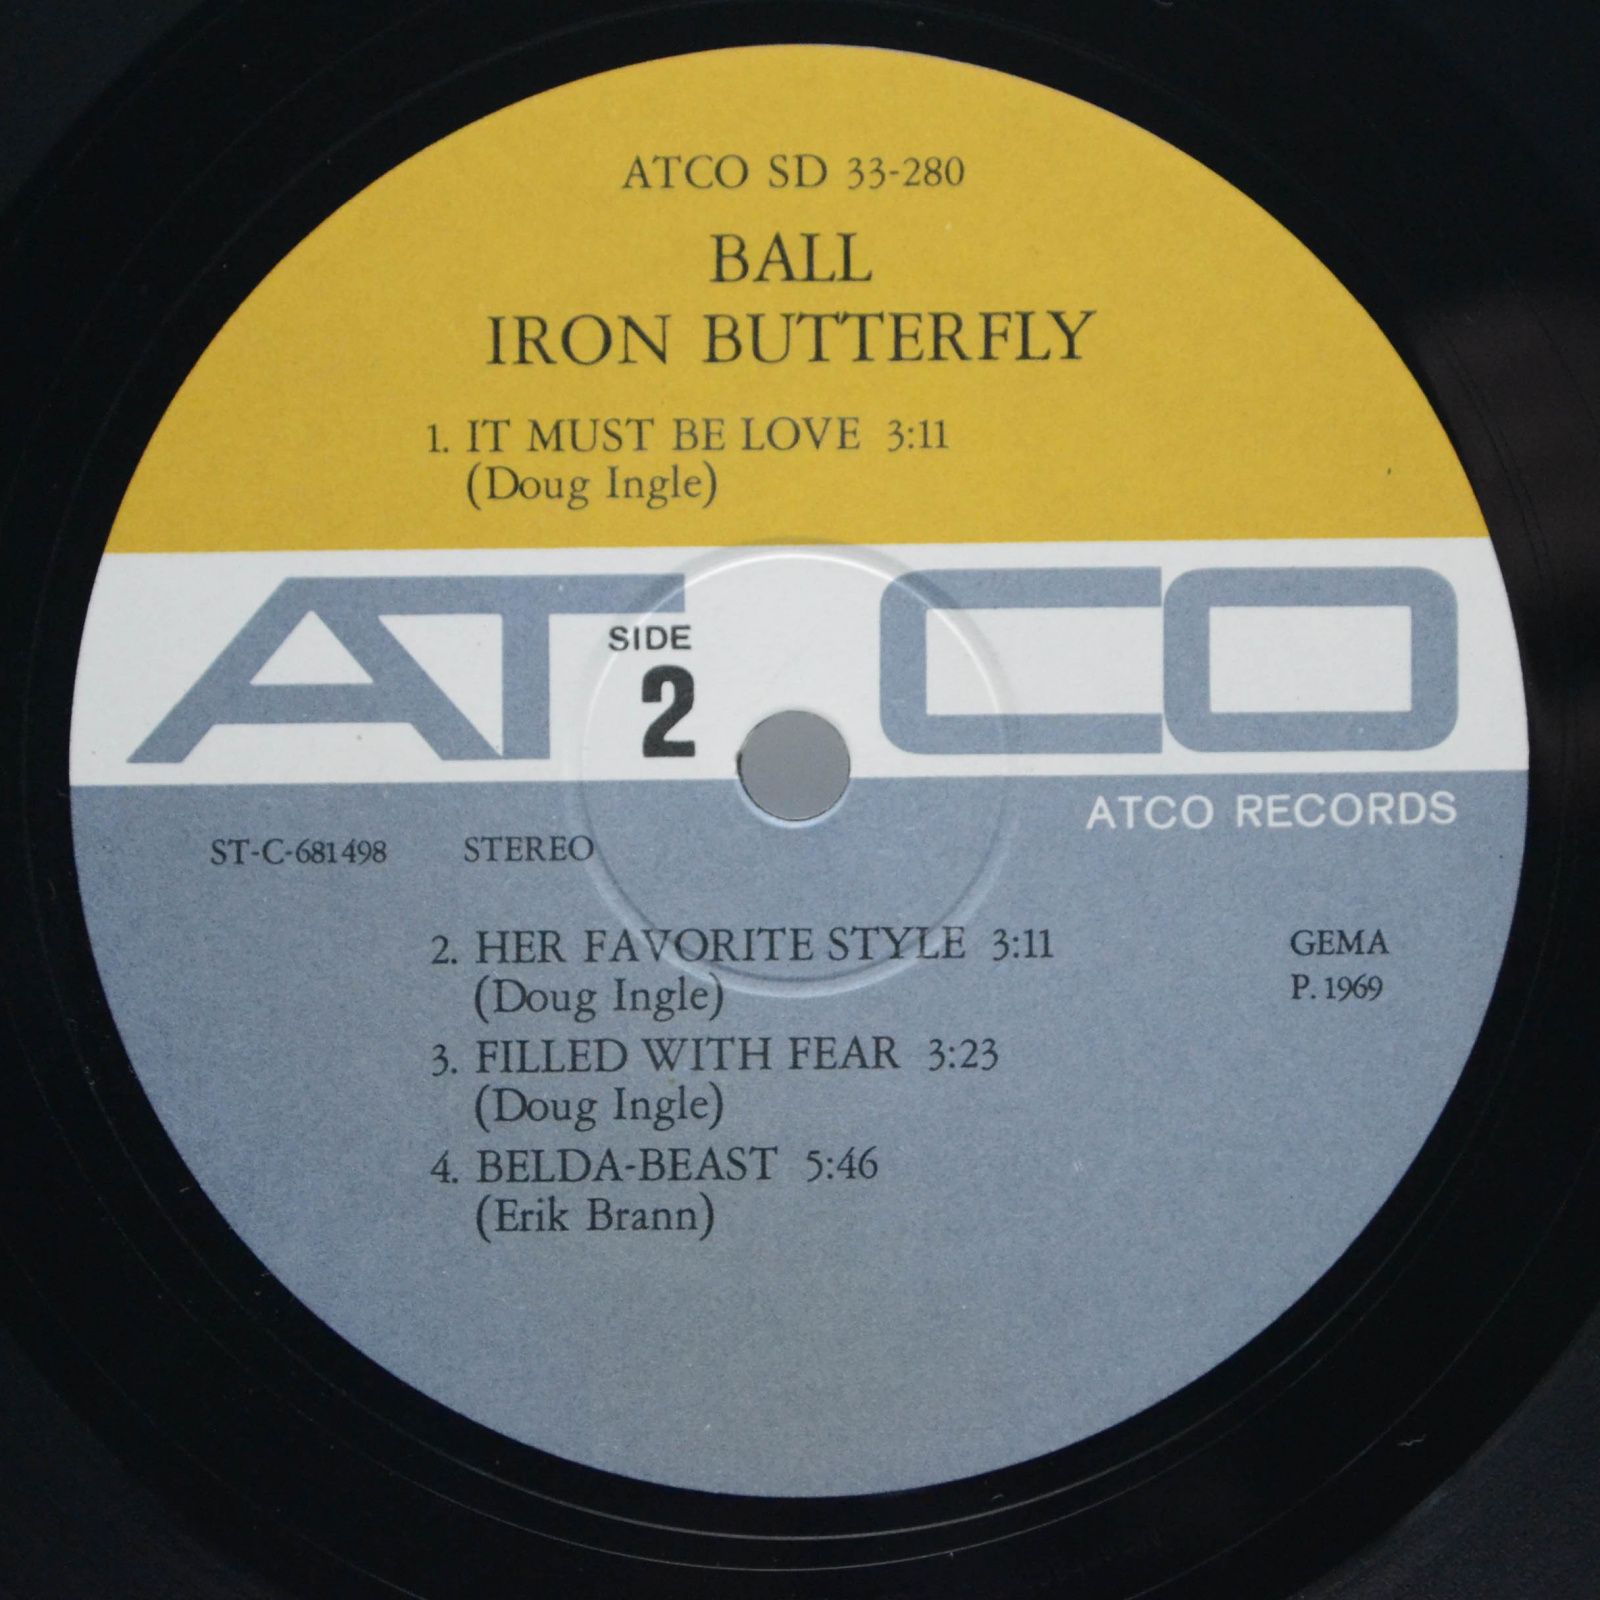 Iron Butterfly — Ball, 1969